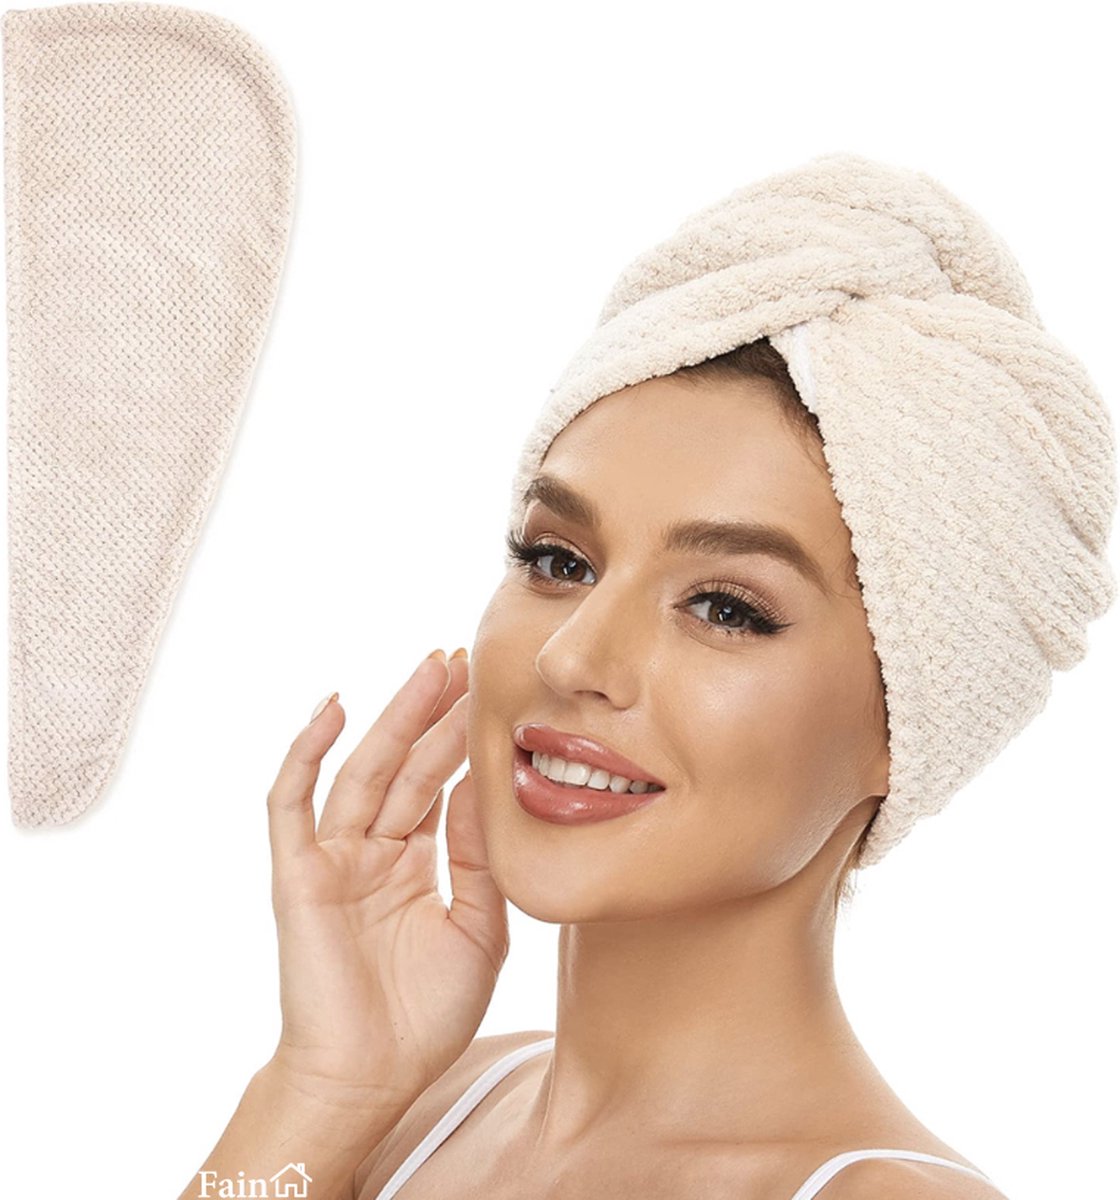 Fain® - Premium haarhanddoek – Hair towel – Beige – Voor alle haartypes - Haarhanddoek microvezel - Hoofdhanddoek – Haartulband – Haarhanddoek badstof – Haarhanddoek kinderen – Haarhanddoek sneldrogend